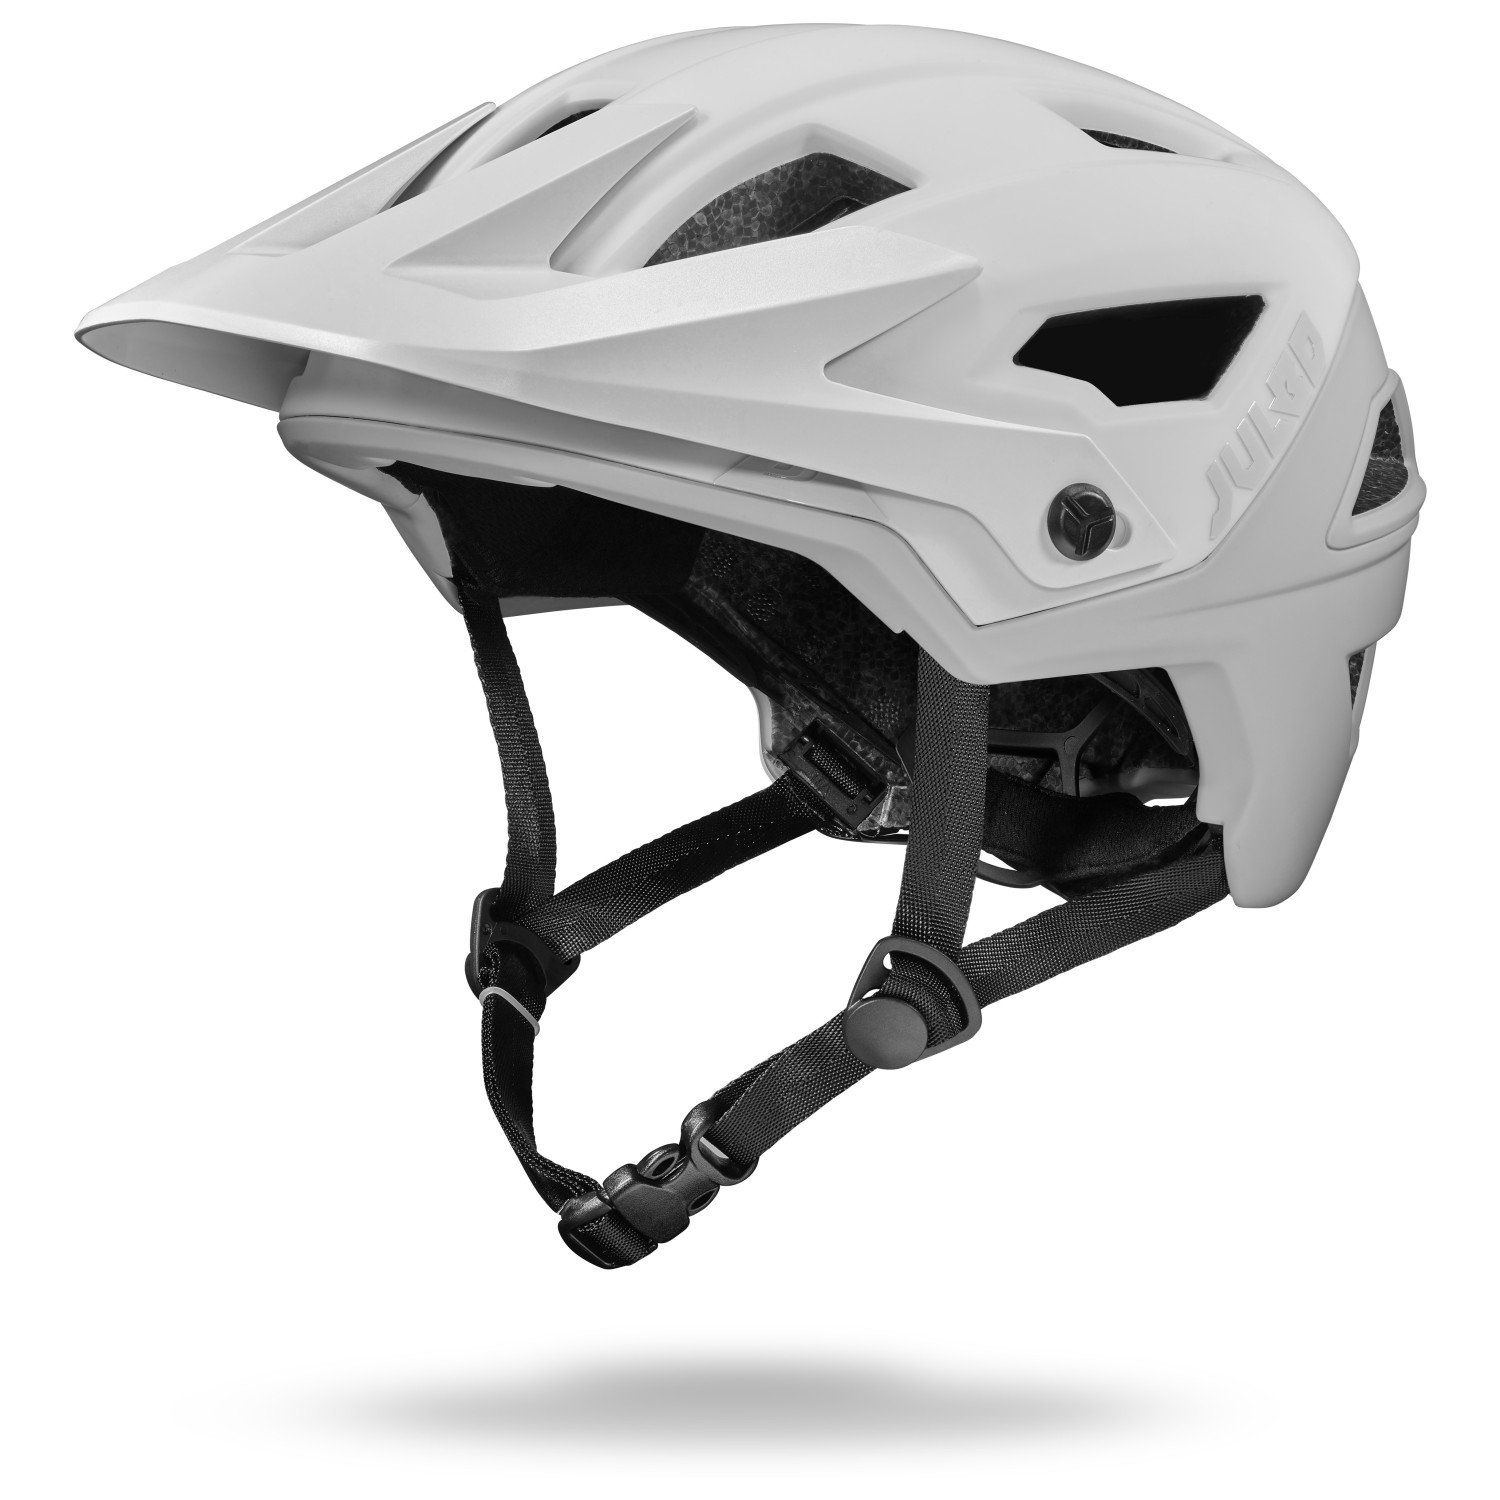 Велосипедный шлем Julbo Rock, цвет White/Grey ключ велосипедный dorkel универсальный